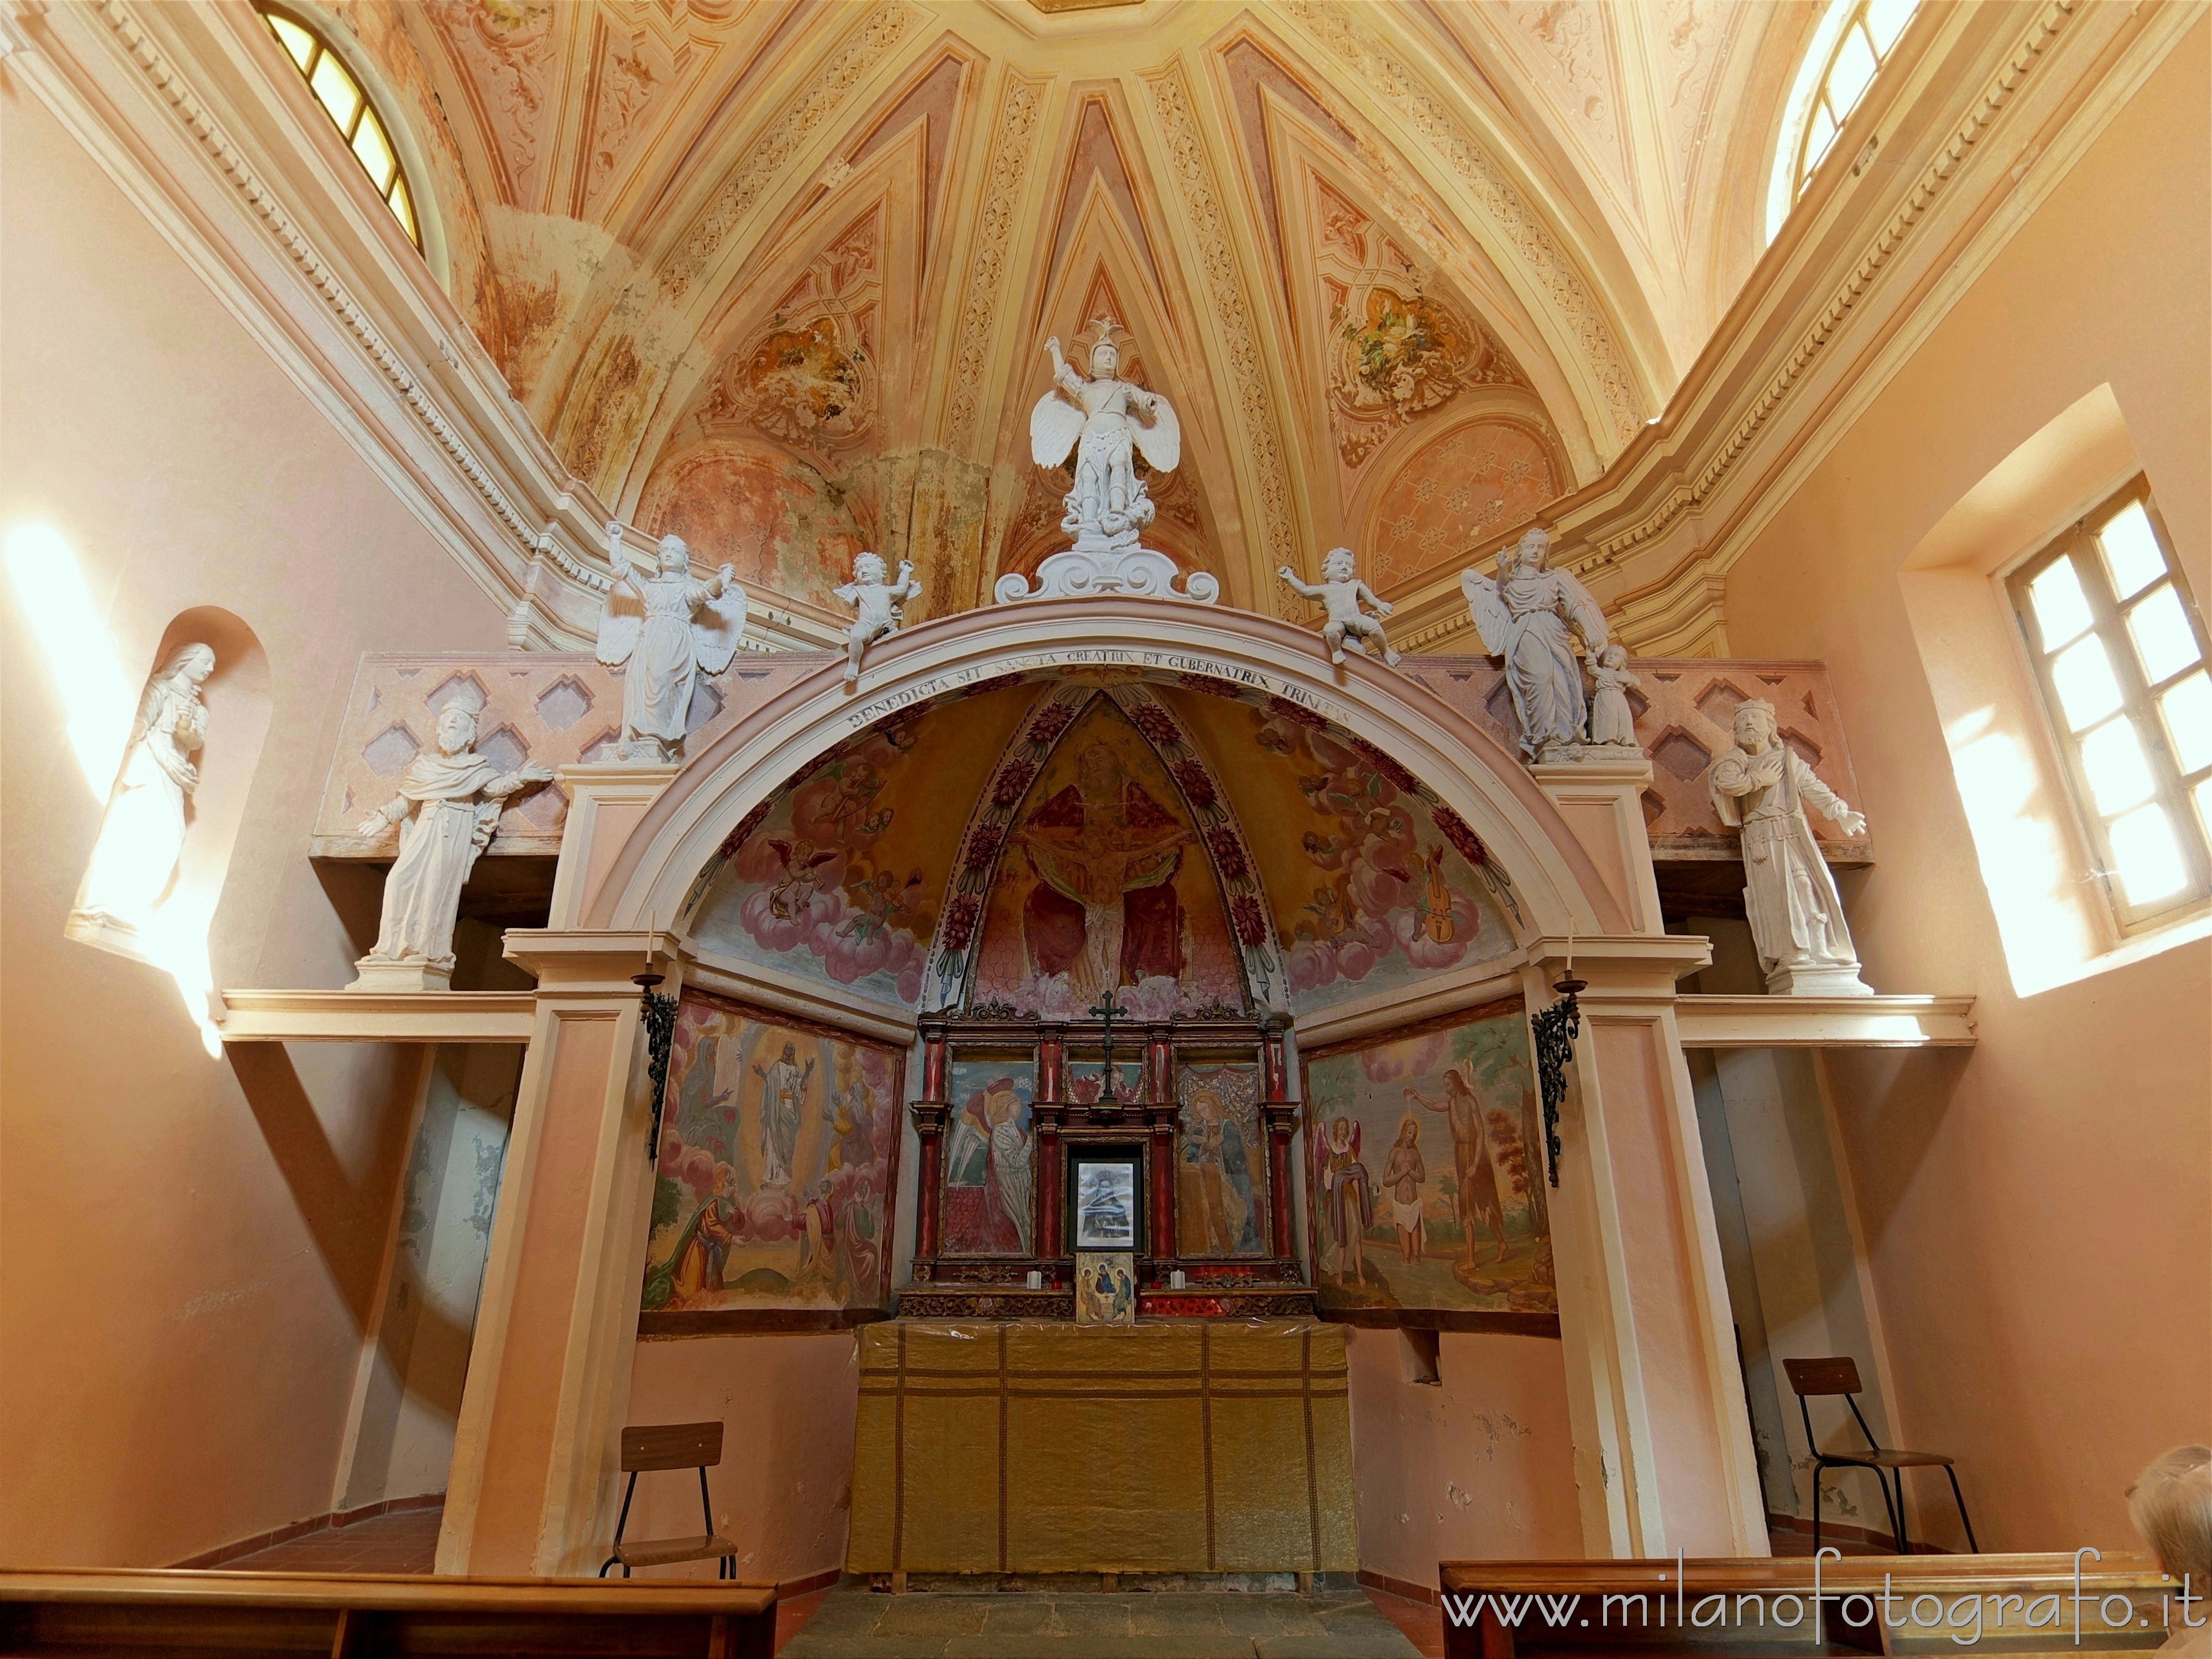 Sagliano Micca (Biella, Italy): Interior of the Oratory of the Most Holy Trinity - Sagliano Micca (Biella, Italy)